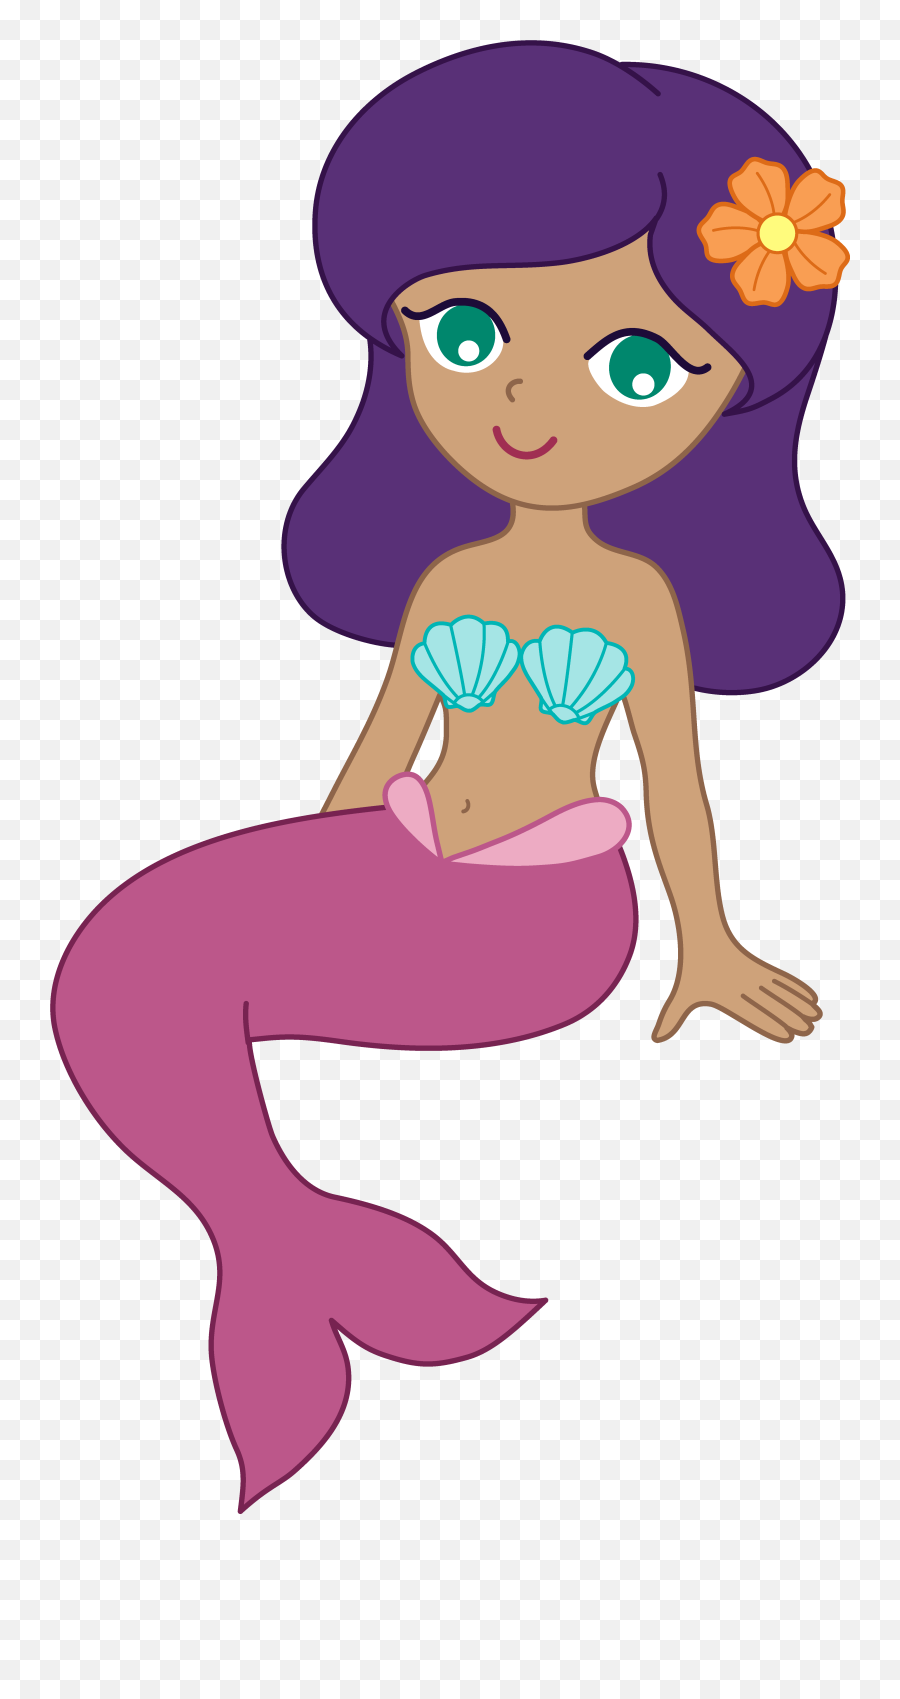 Free Purple Mermaid Silhouette - Mermaid Clipart Kids Emoji,Is There A Mermaid Emoji